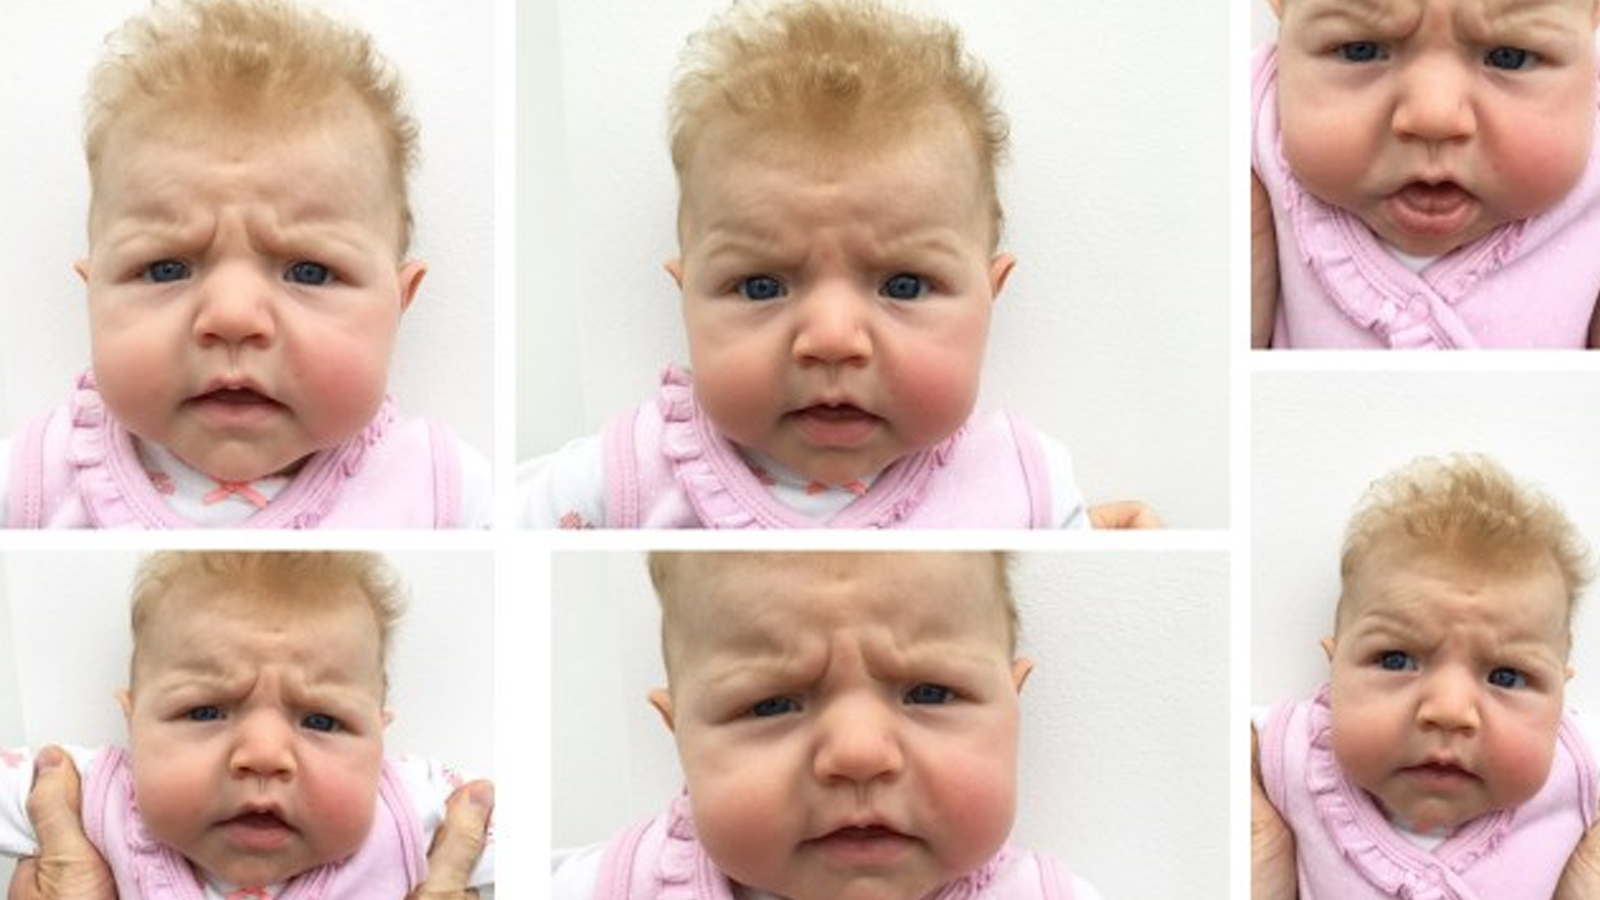 媽媽分享 英國3個月大女嬰天生愛皺眉頭媽媽親自操刀影證件相 似乎是件不可能的事 生活熱話